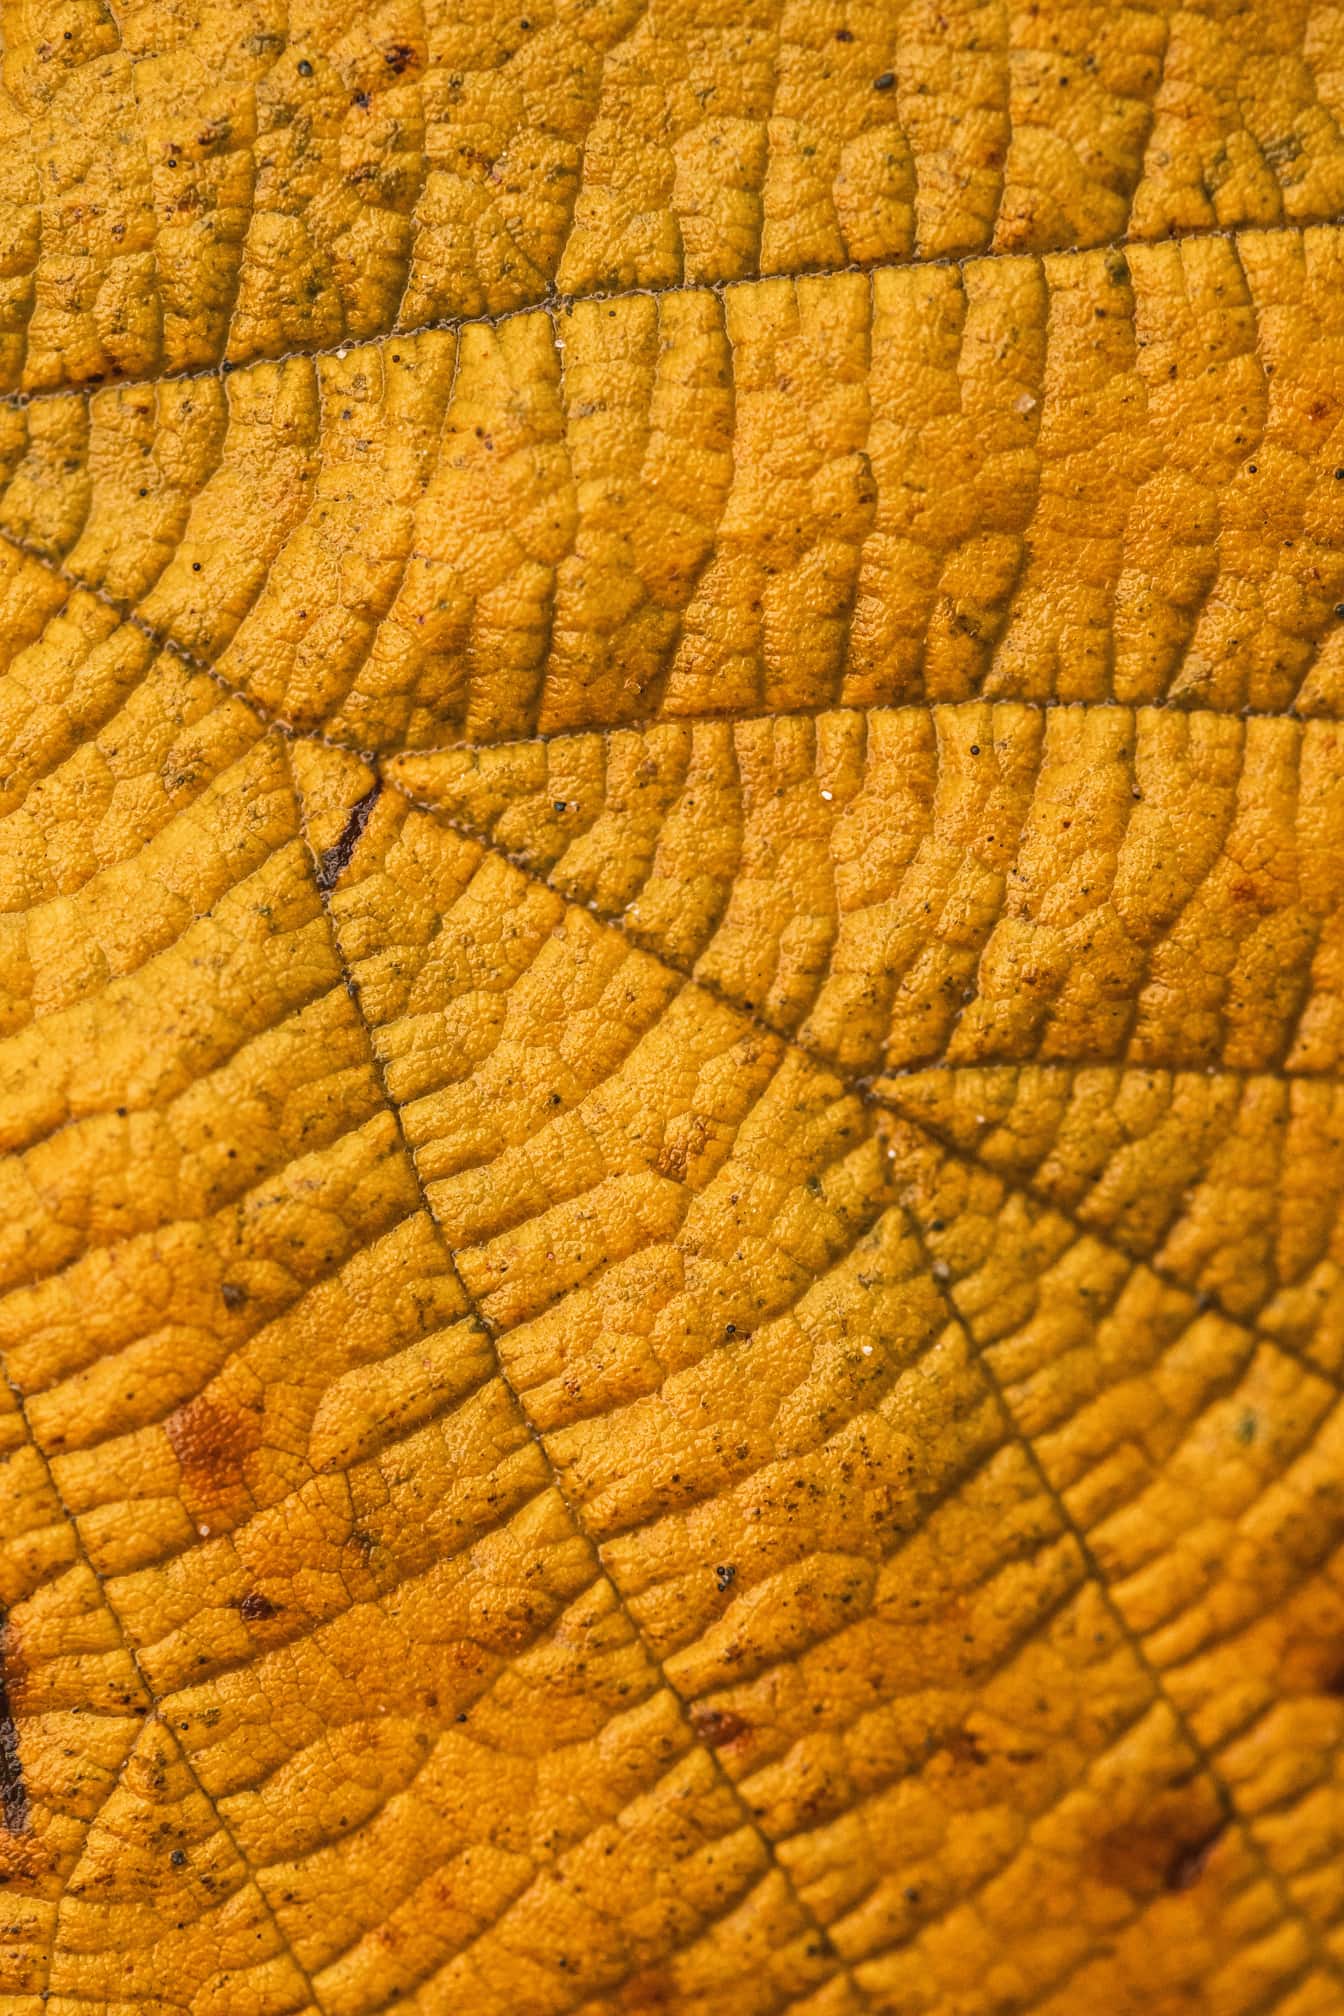 Gulbrun blad makro fotografi närbild textur